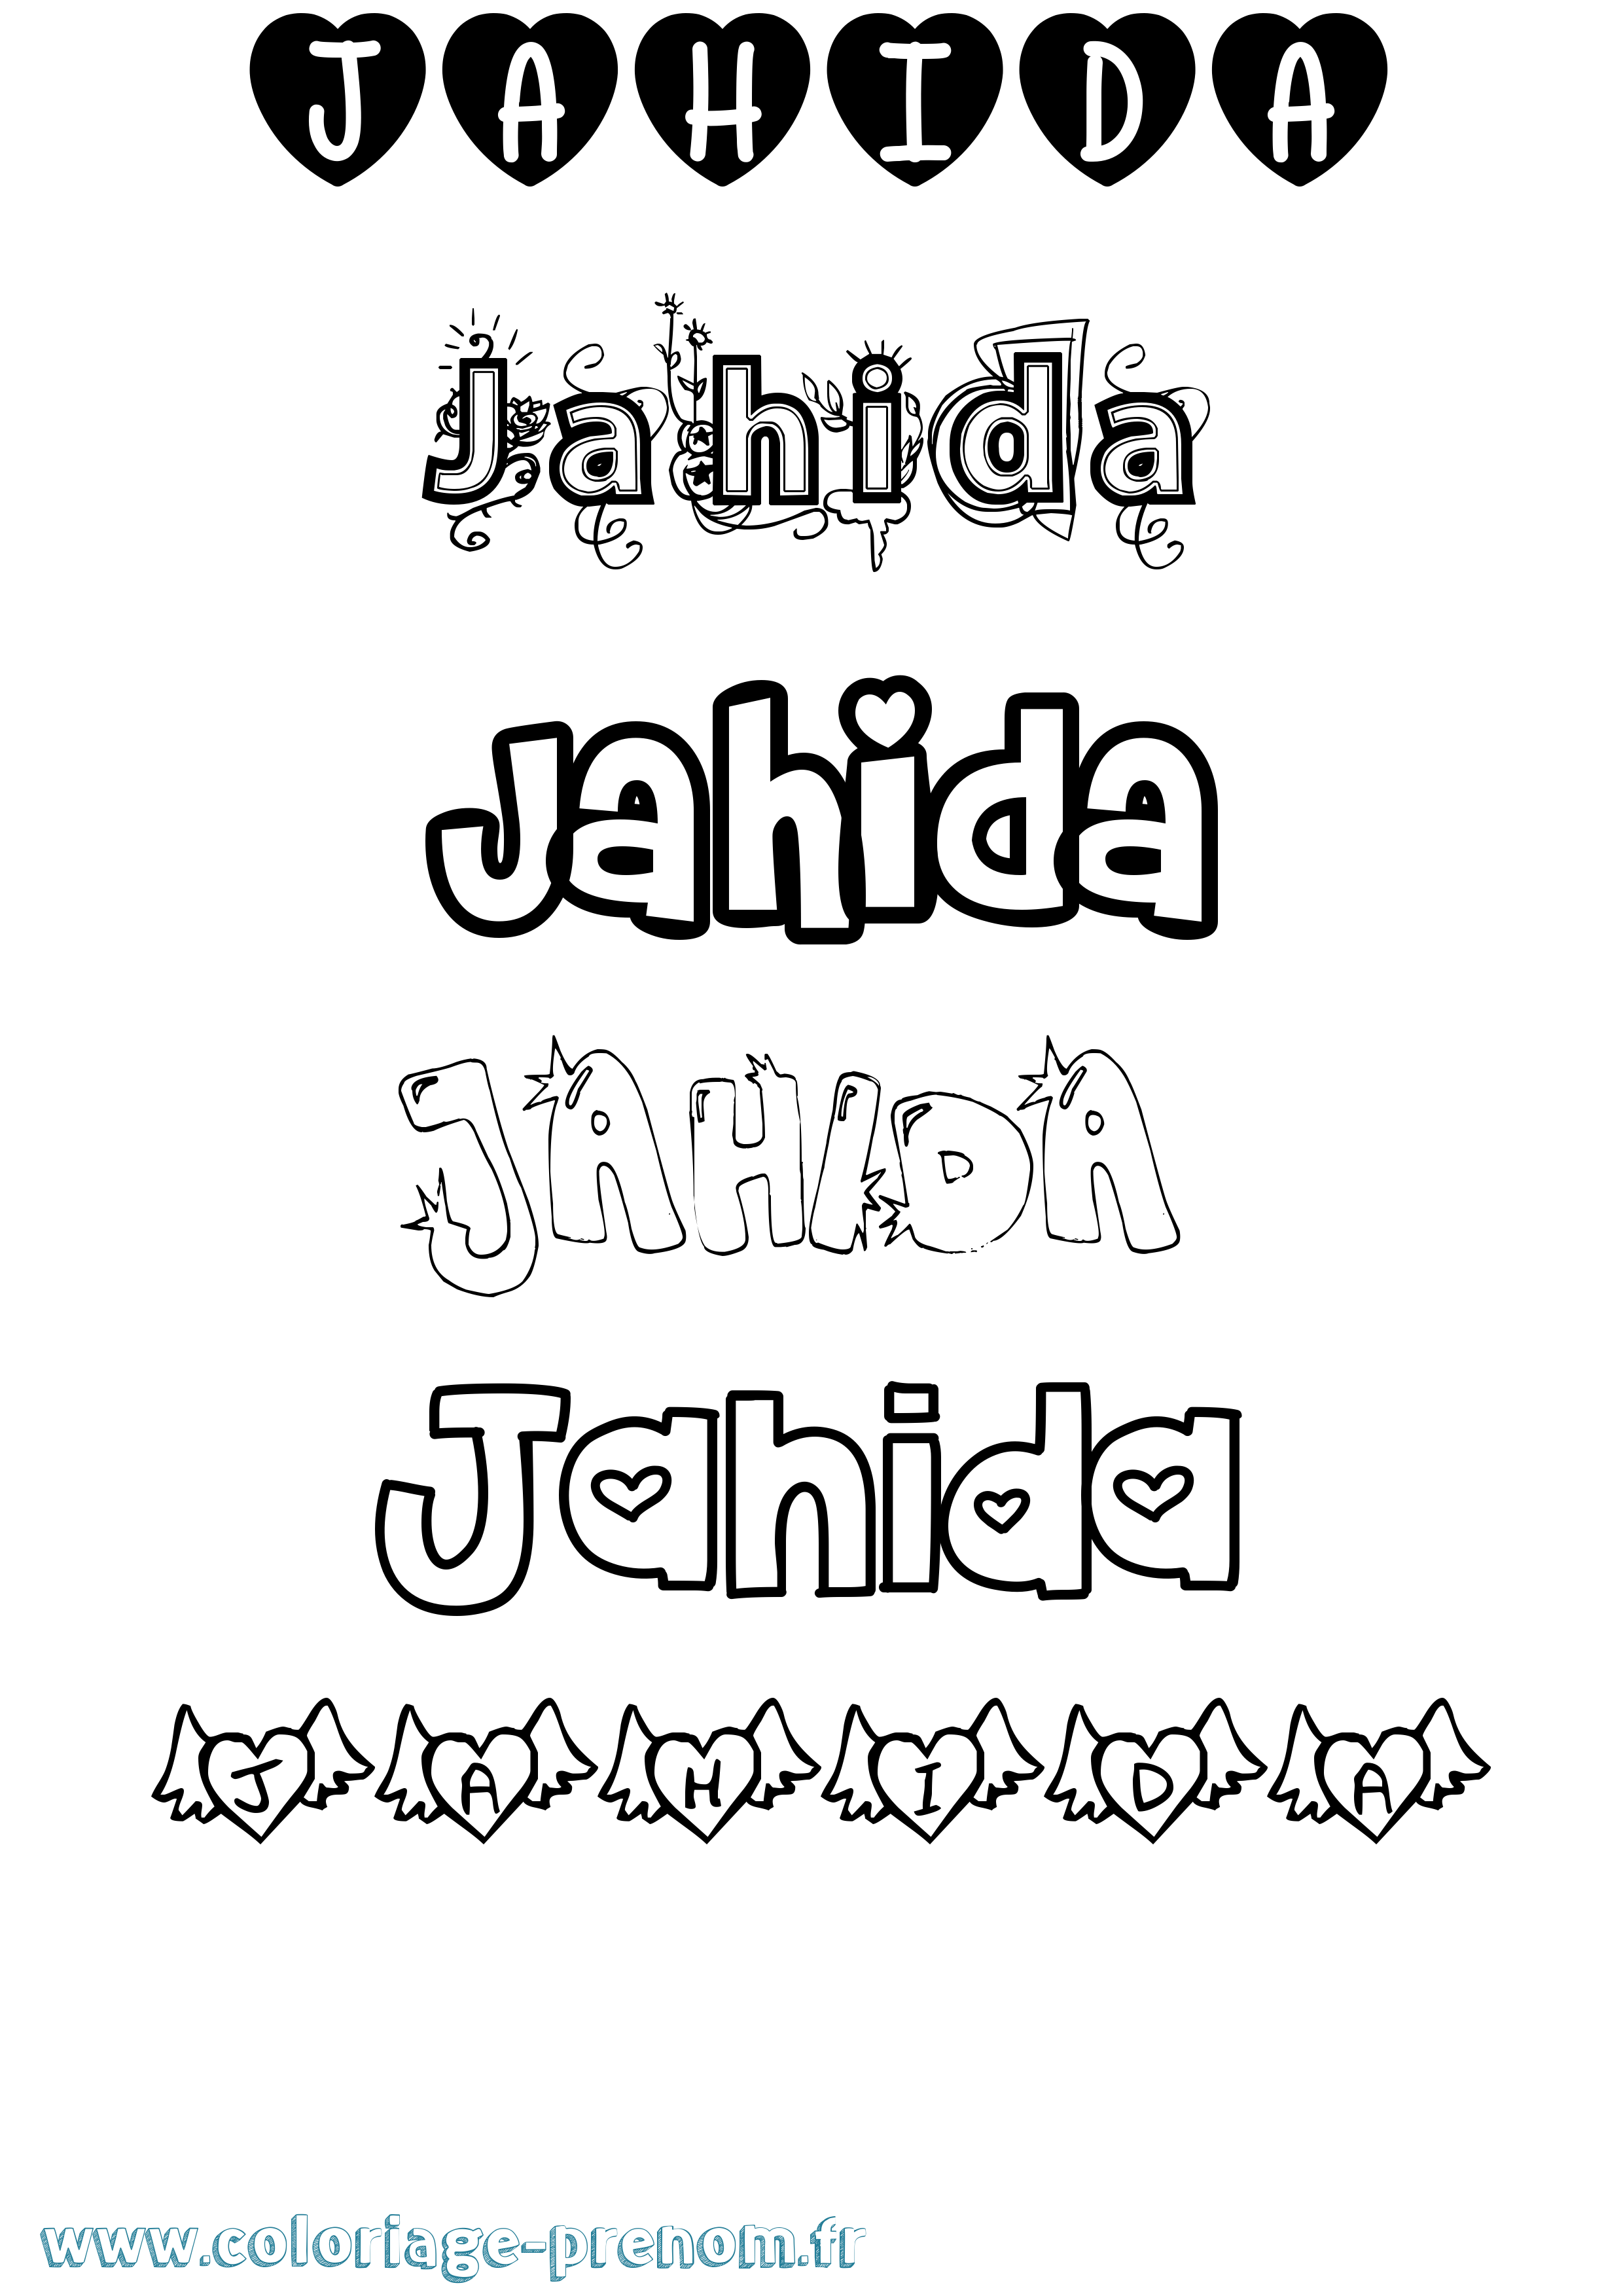 Coloriage prénom Jahida Girly